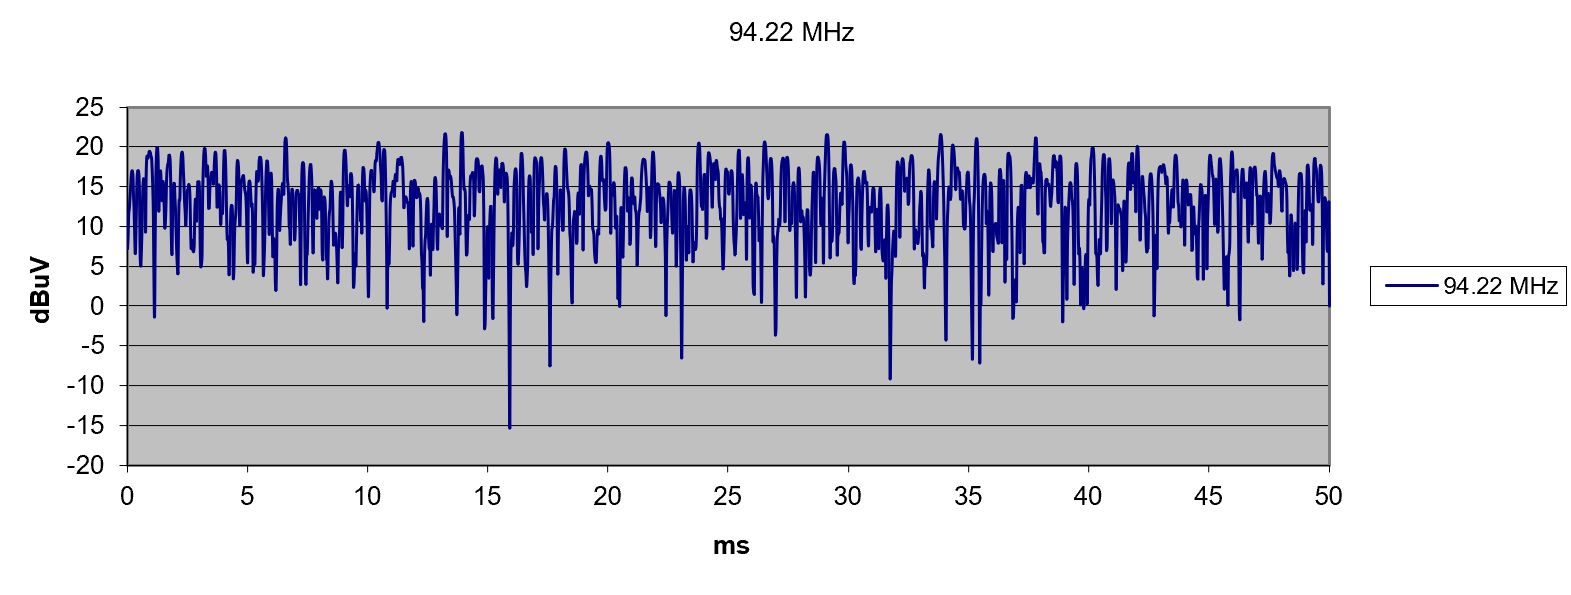 random-noise-graph-1.png